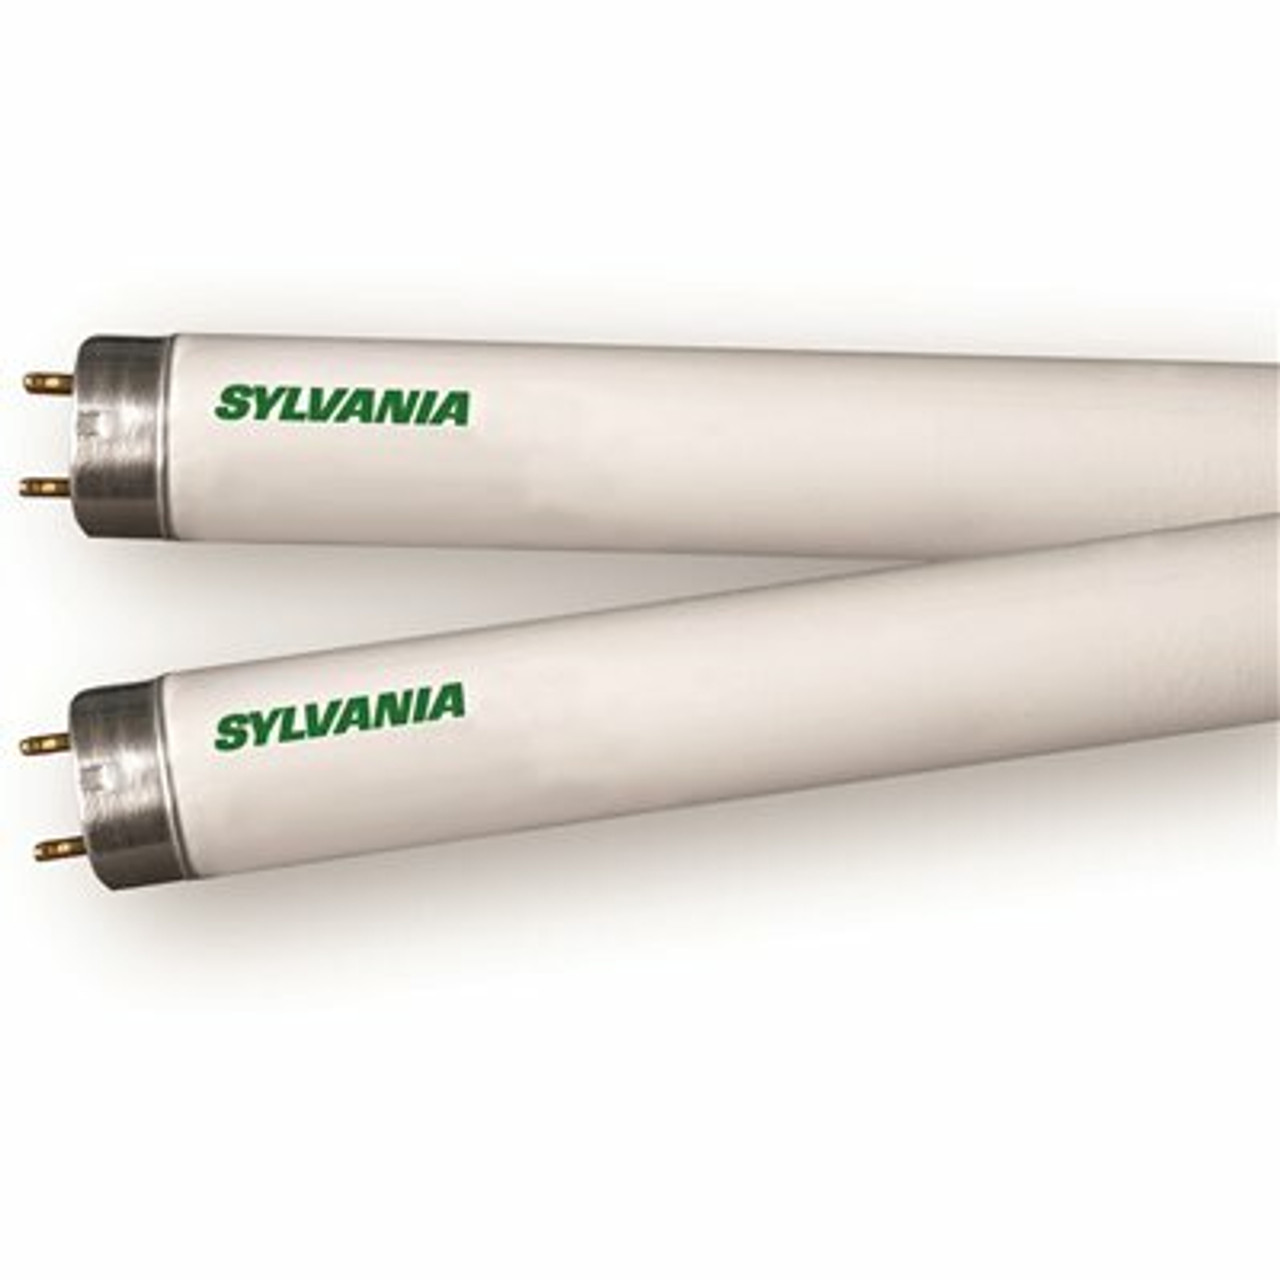 Sylvania 3 Ft. 25-Watt Linear T8 Fluorescent Tube Light Bulb, Cool White (1-Bulb)